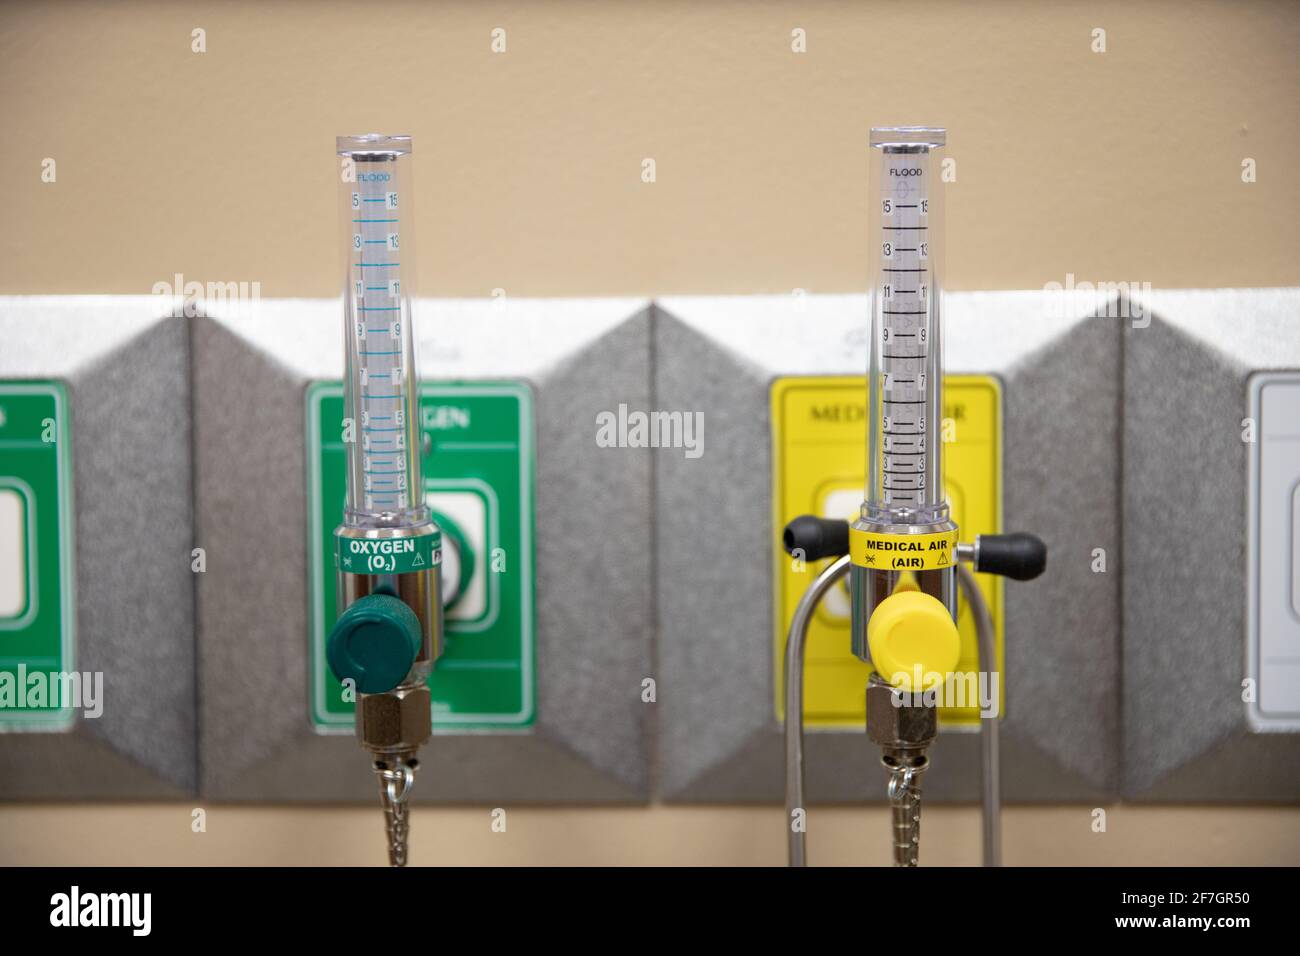 rubinetti per aria medica e ossigeno in un ospedale camera Foto Stock